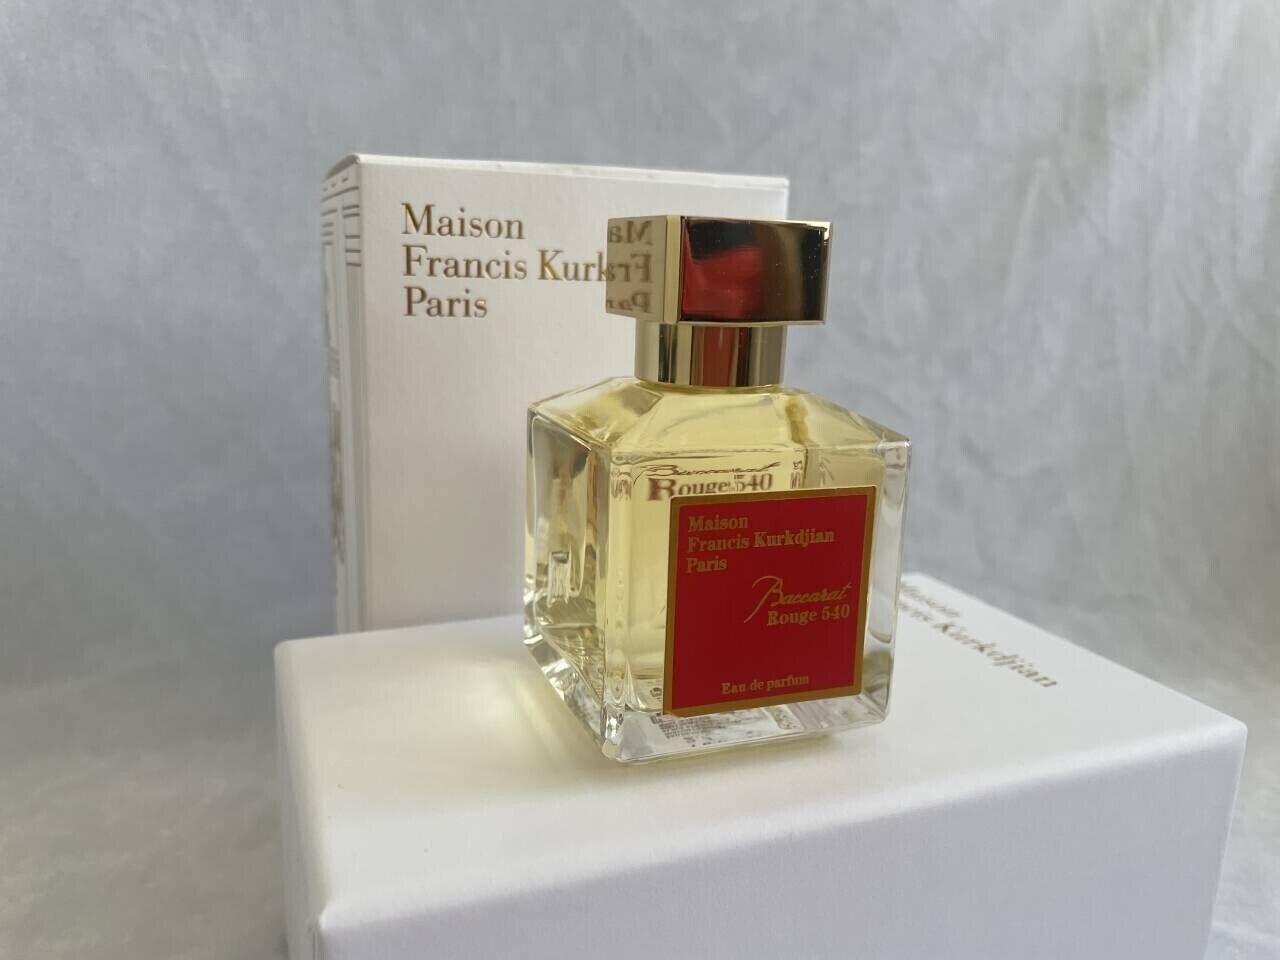 Maison Francis Kurkdjian Baccarat Rouge 540 Eau De Parfum 2.4 Oz FACTORY SEALED.